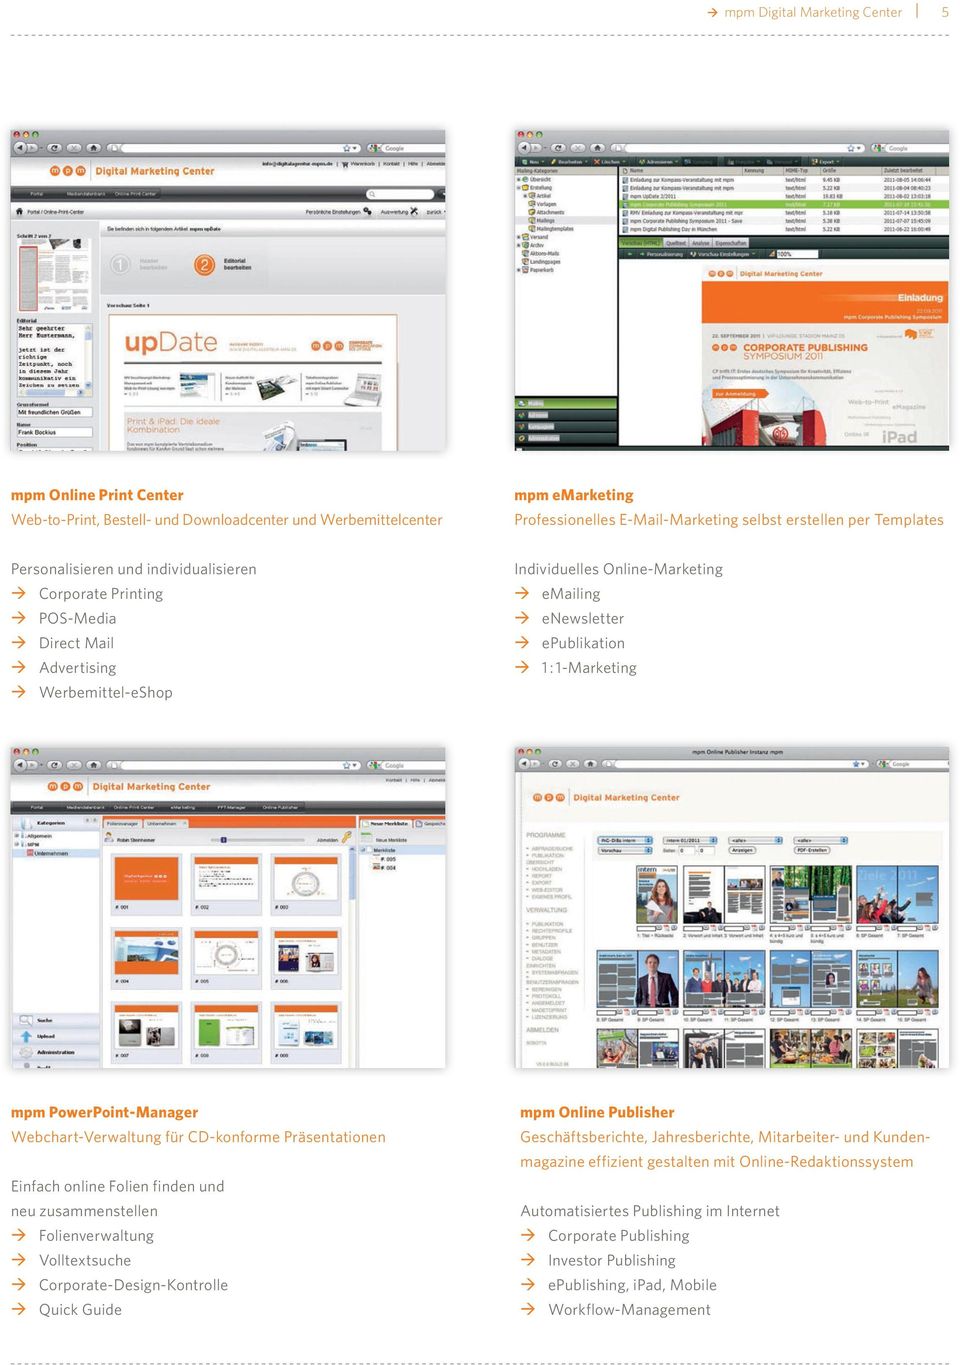 PowerPoint-Manager mpm Online Publisher Webchart-Verwaltung für CD-konforme Präsentationen Geschäftsberichte, Jahresberichte, Mitarbeiter- und Kundenmagazine effizient gestalten mit